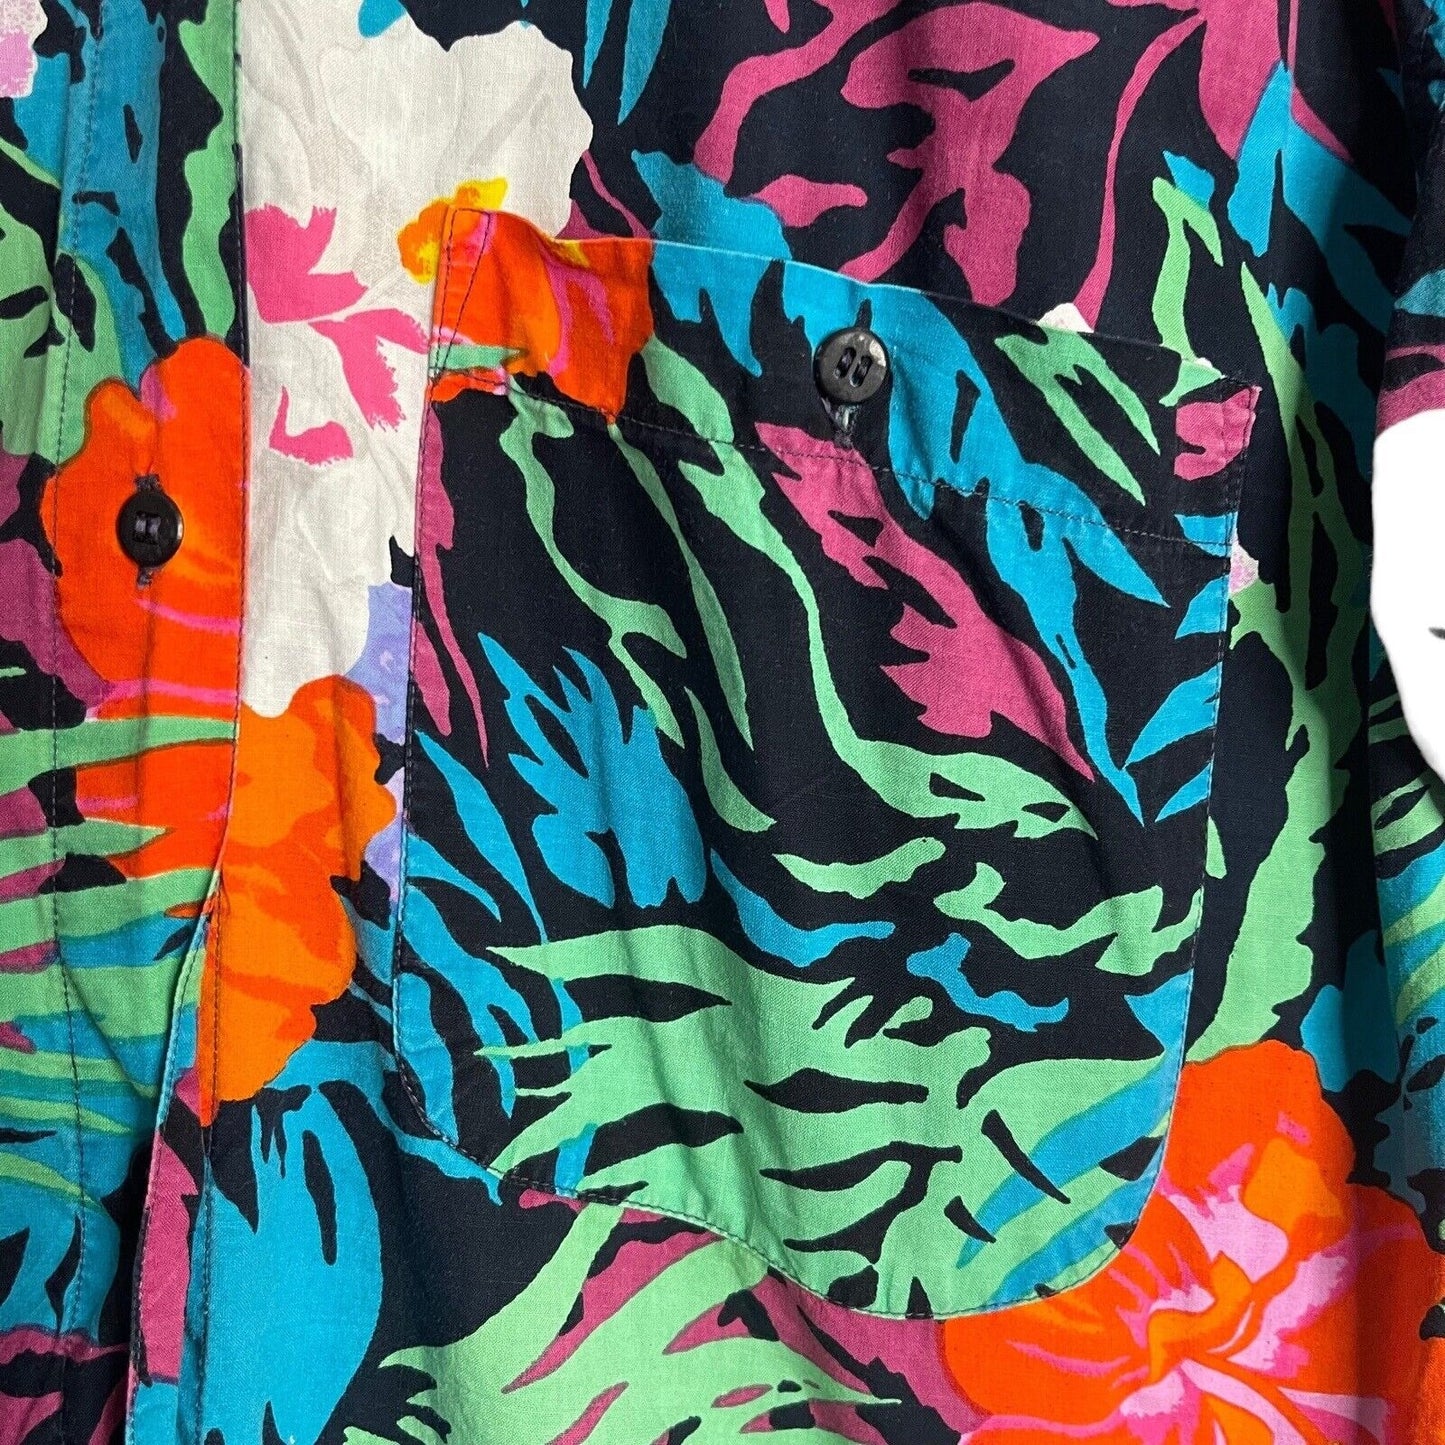 La Femme Button Up Shirt Women's Medium Multicolor Tropical Boyfriend VTG Top